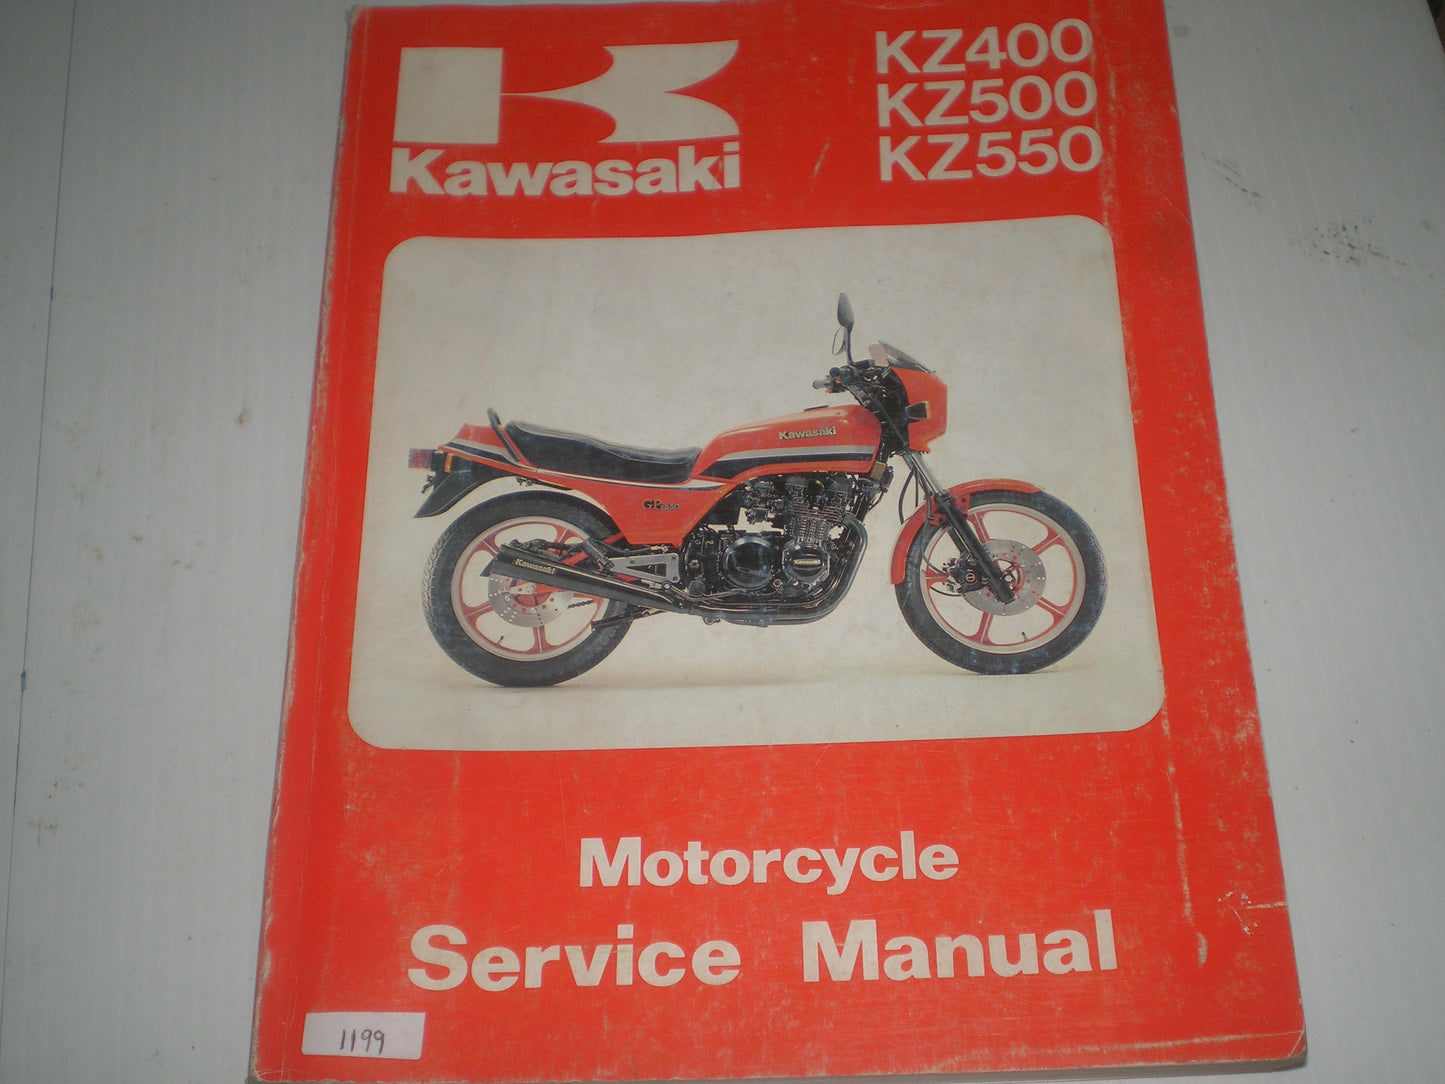 KAWASAKI KZ400 KZ500 KZ550 1979-1983  Service Manual  99924-1018-05  #1199